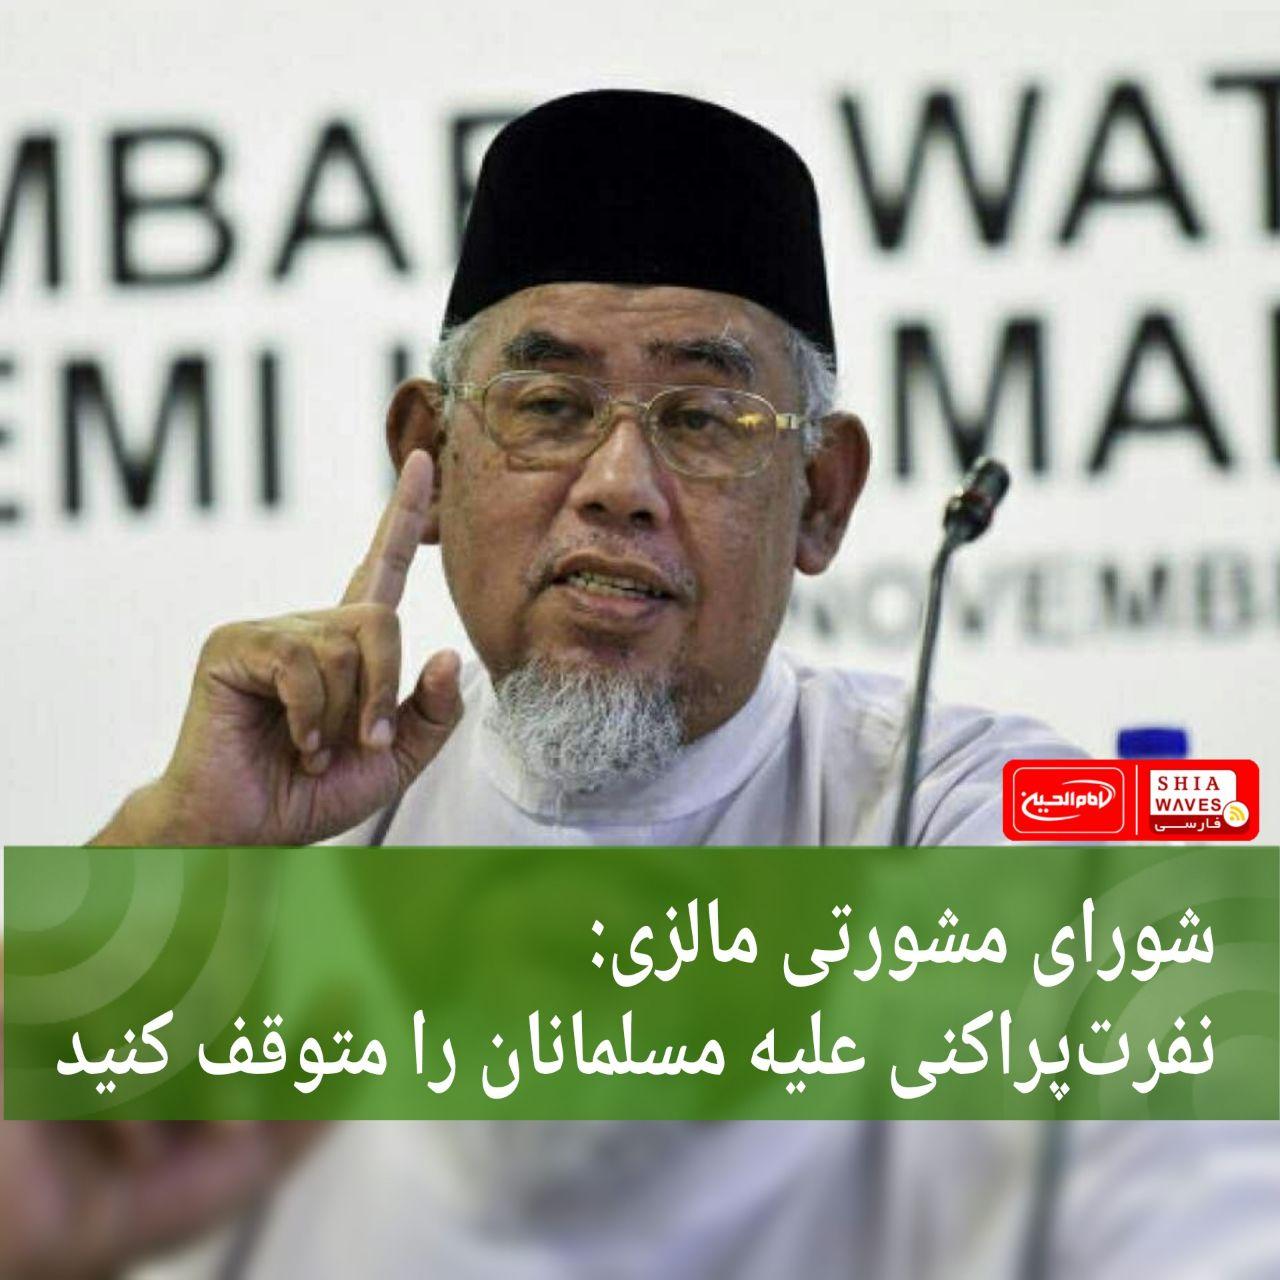 تصویر شورای مشورتی مالزی: نفرت‌پراکنی علیه مسلمانان را متوقف کنید